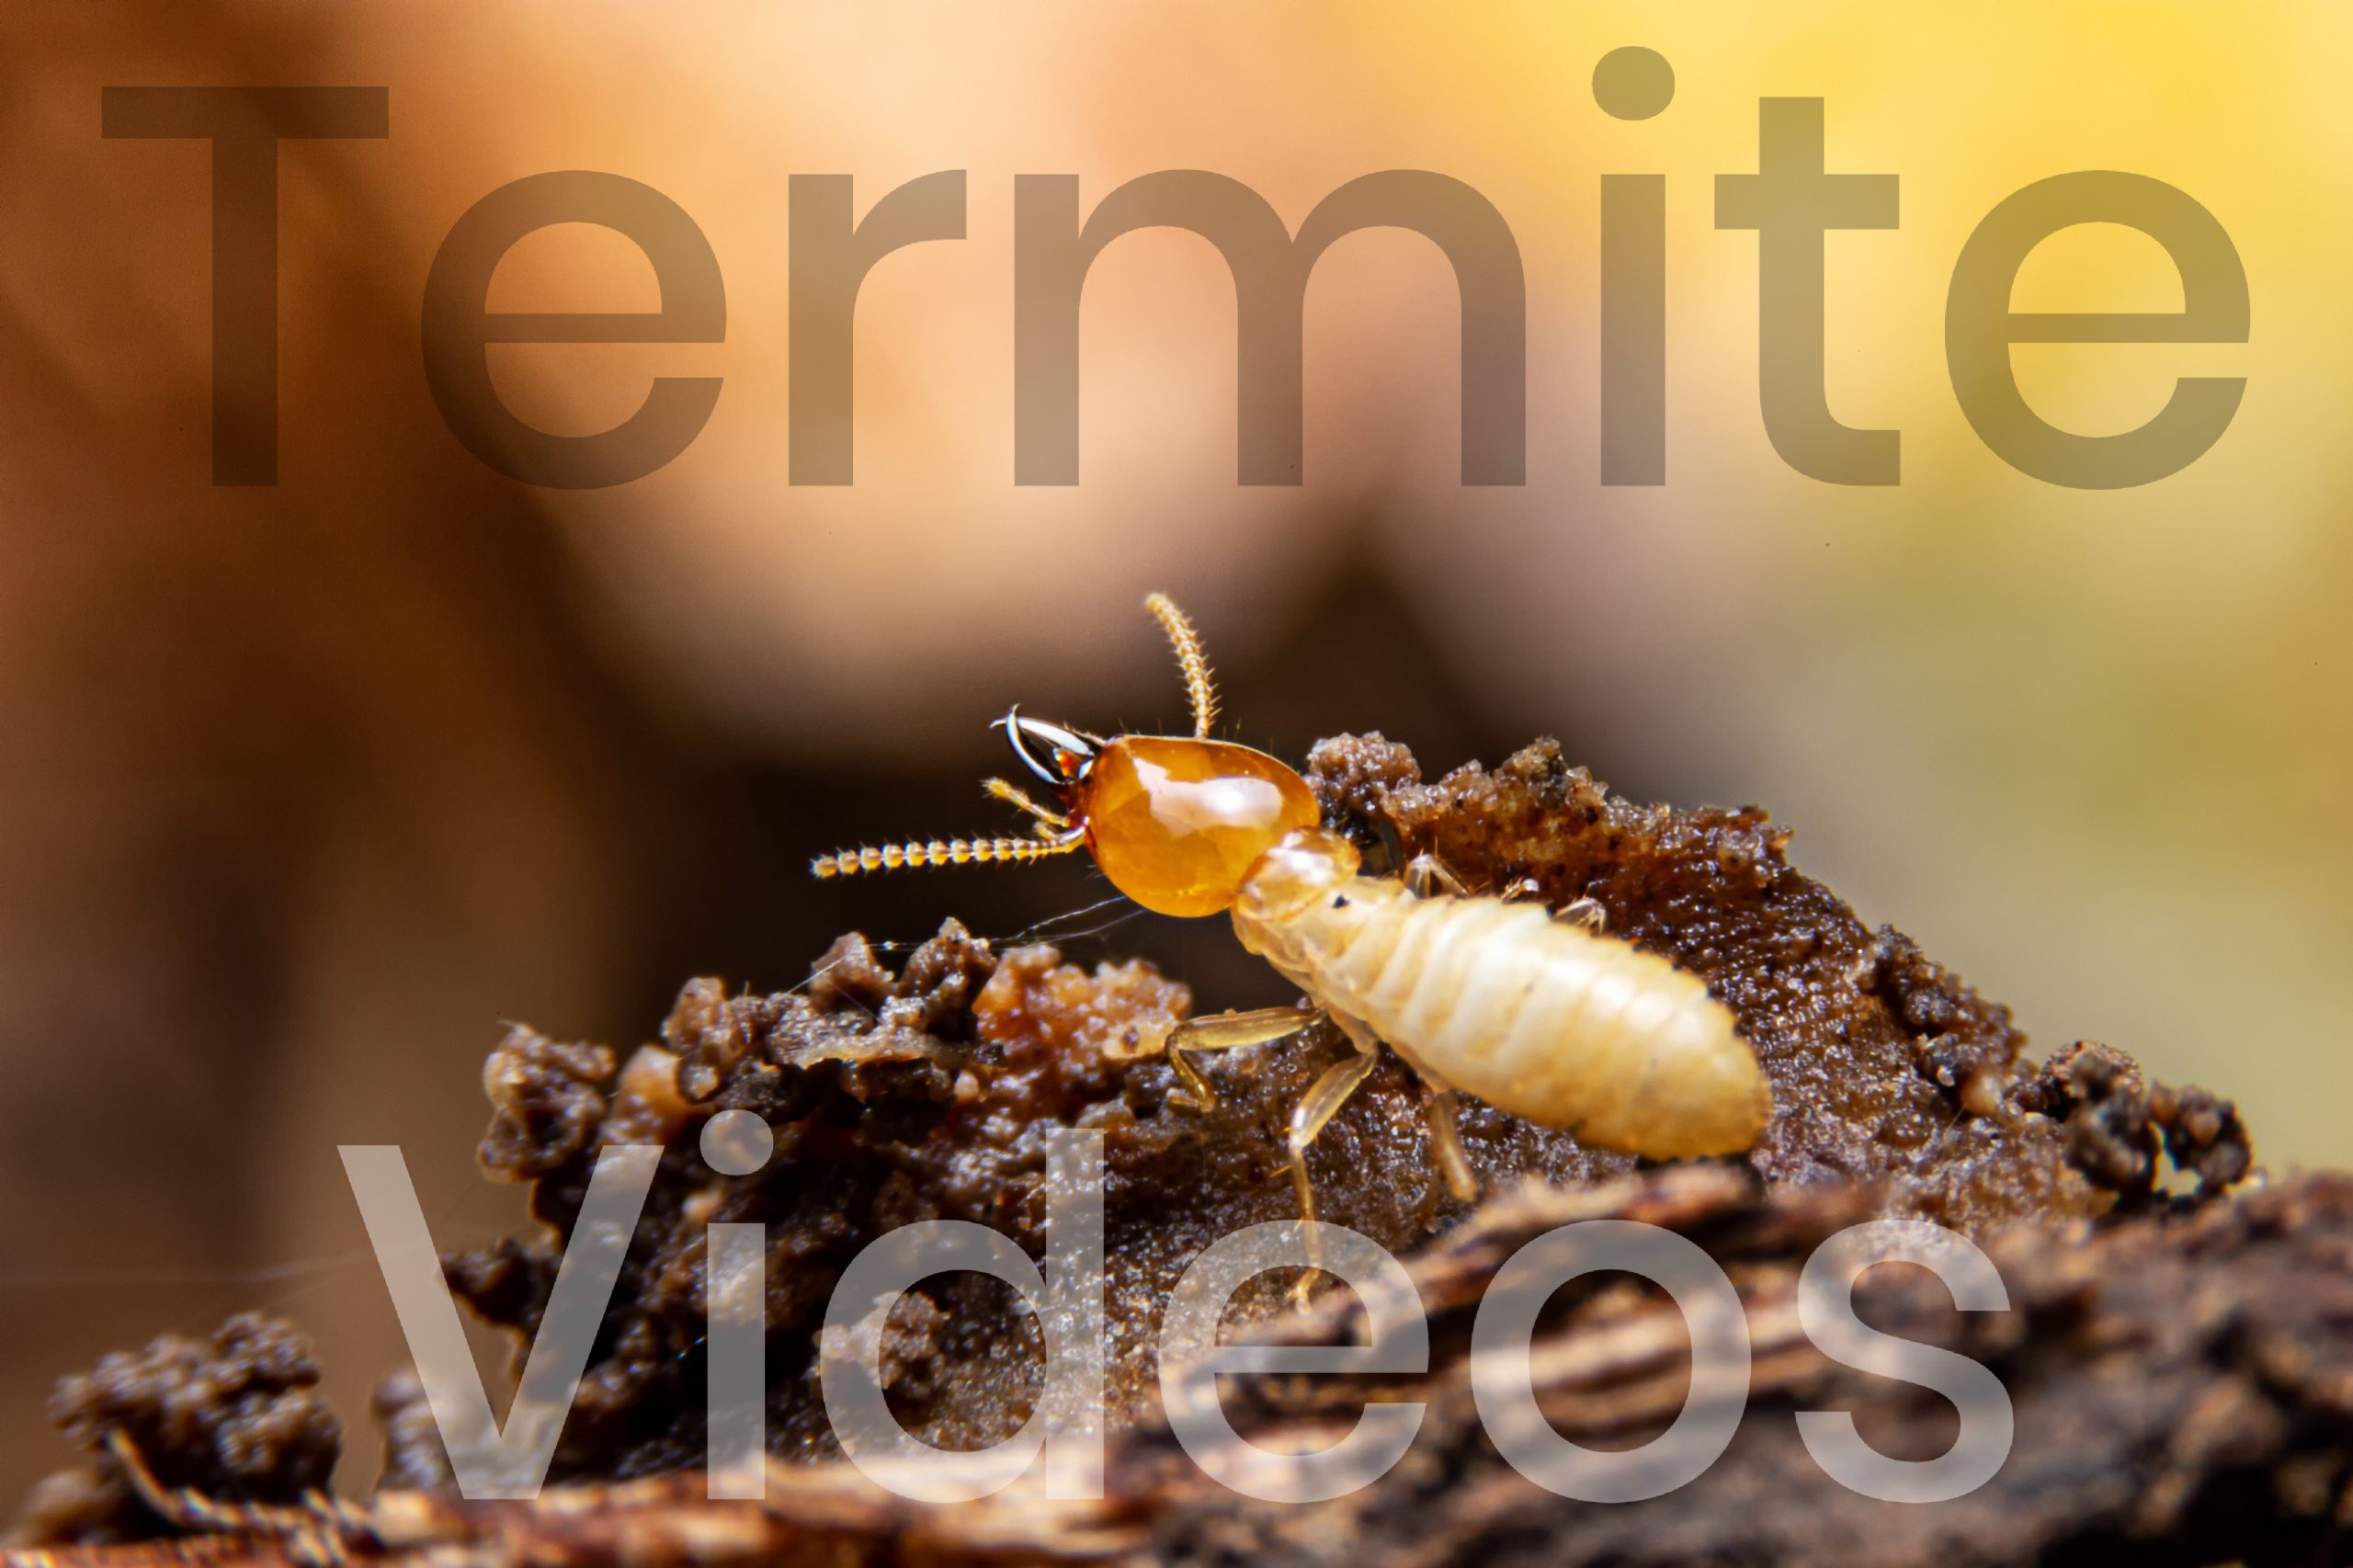 Termite Videos